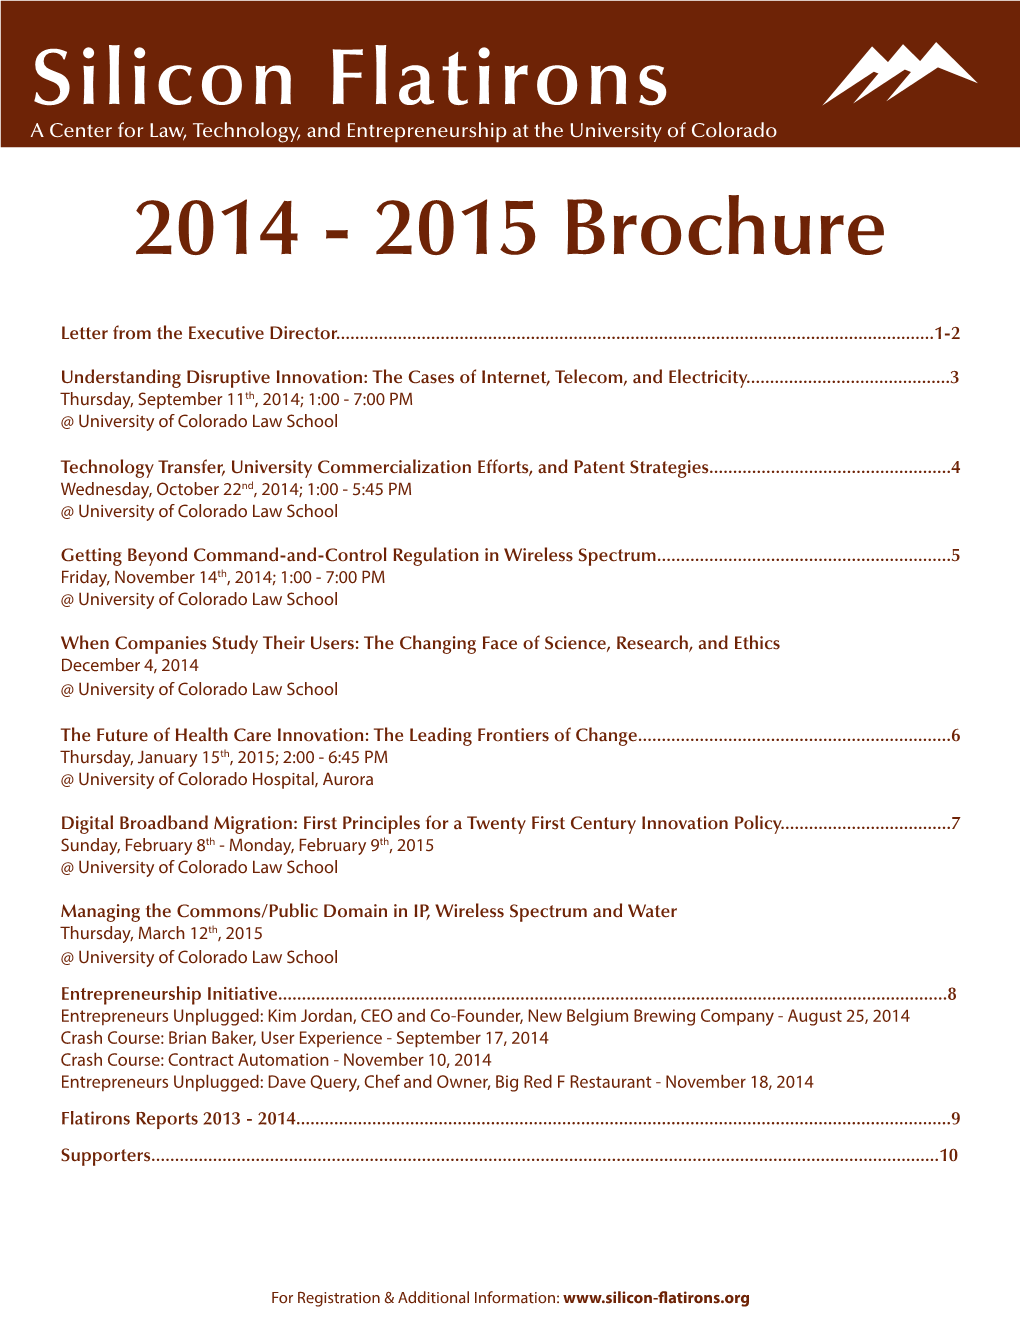 2015 Brochure